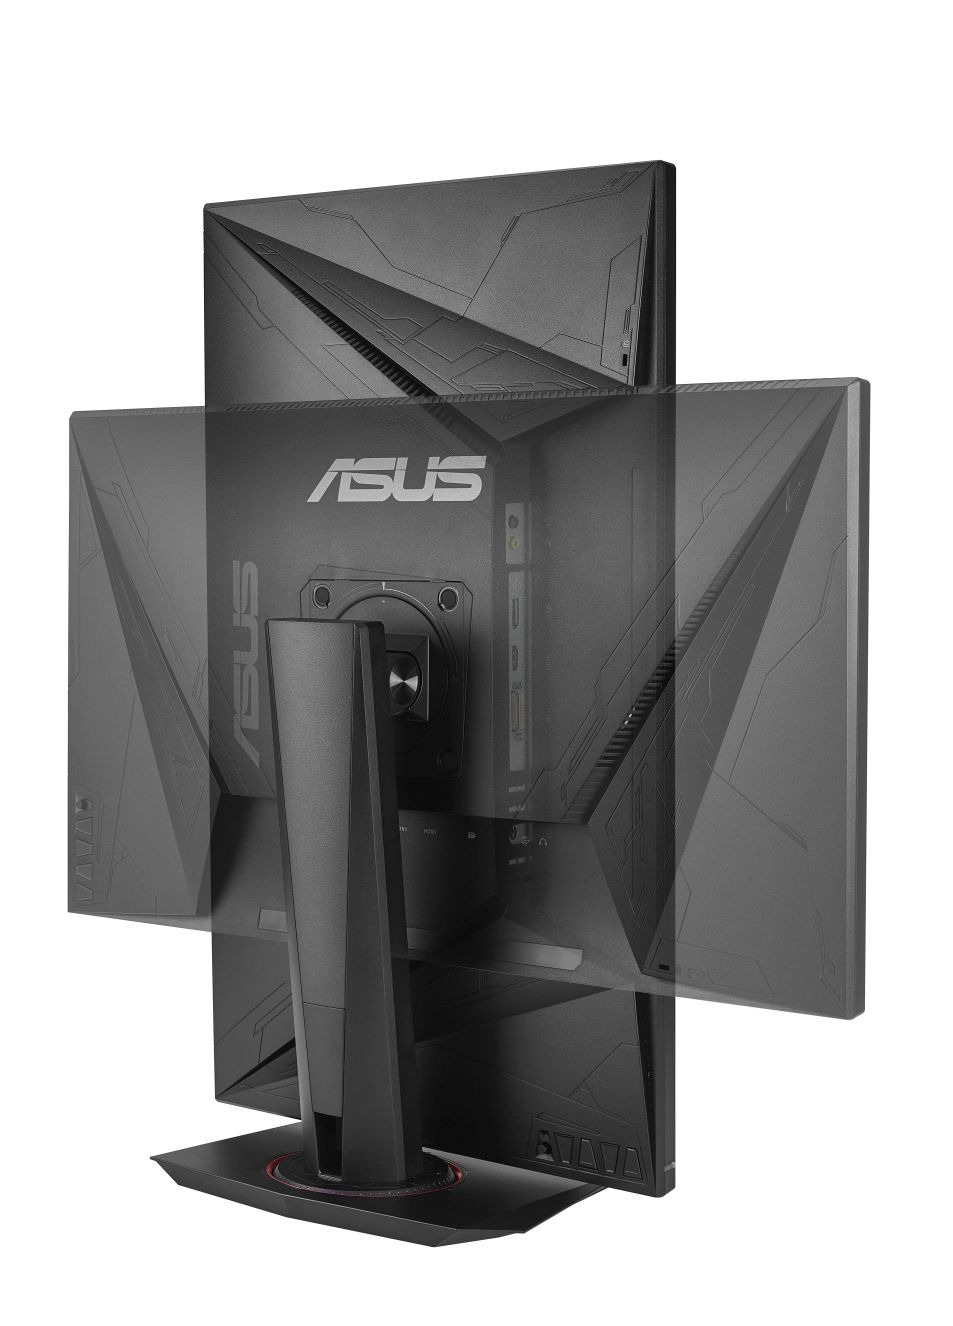 【ASUS】最大 165Hz 駆動の 「G – sync compatible」、「AMD FreeSync™ テクノロジー」対応 27